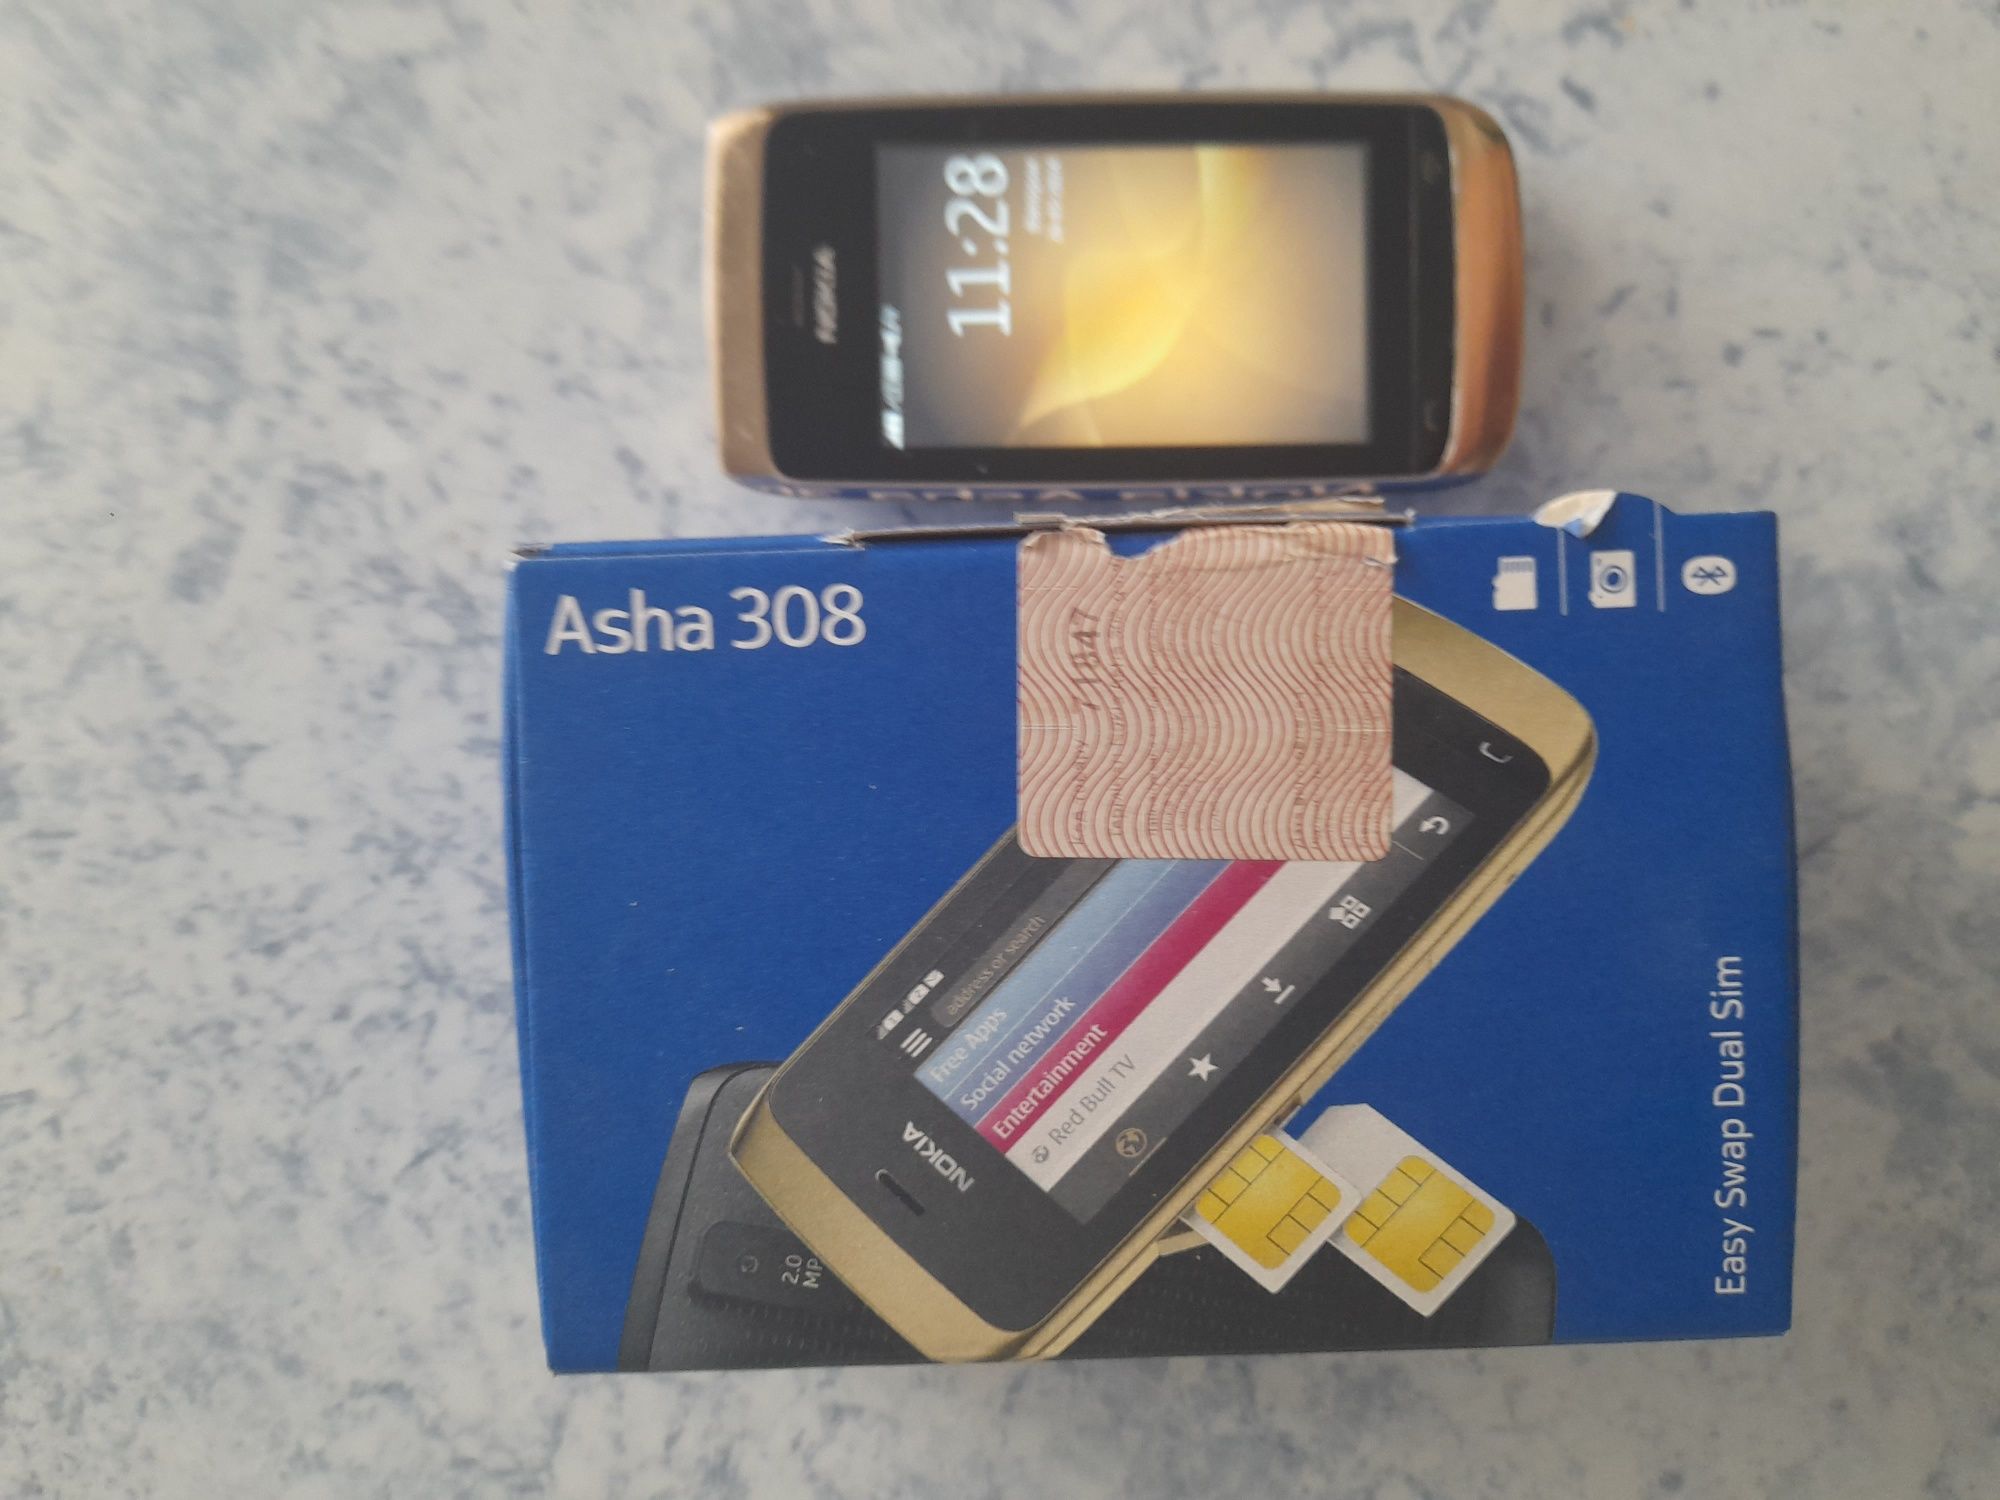 Nokia asha 308 (сенсорный).